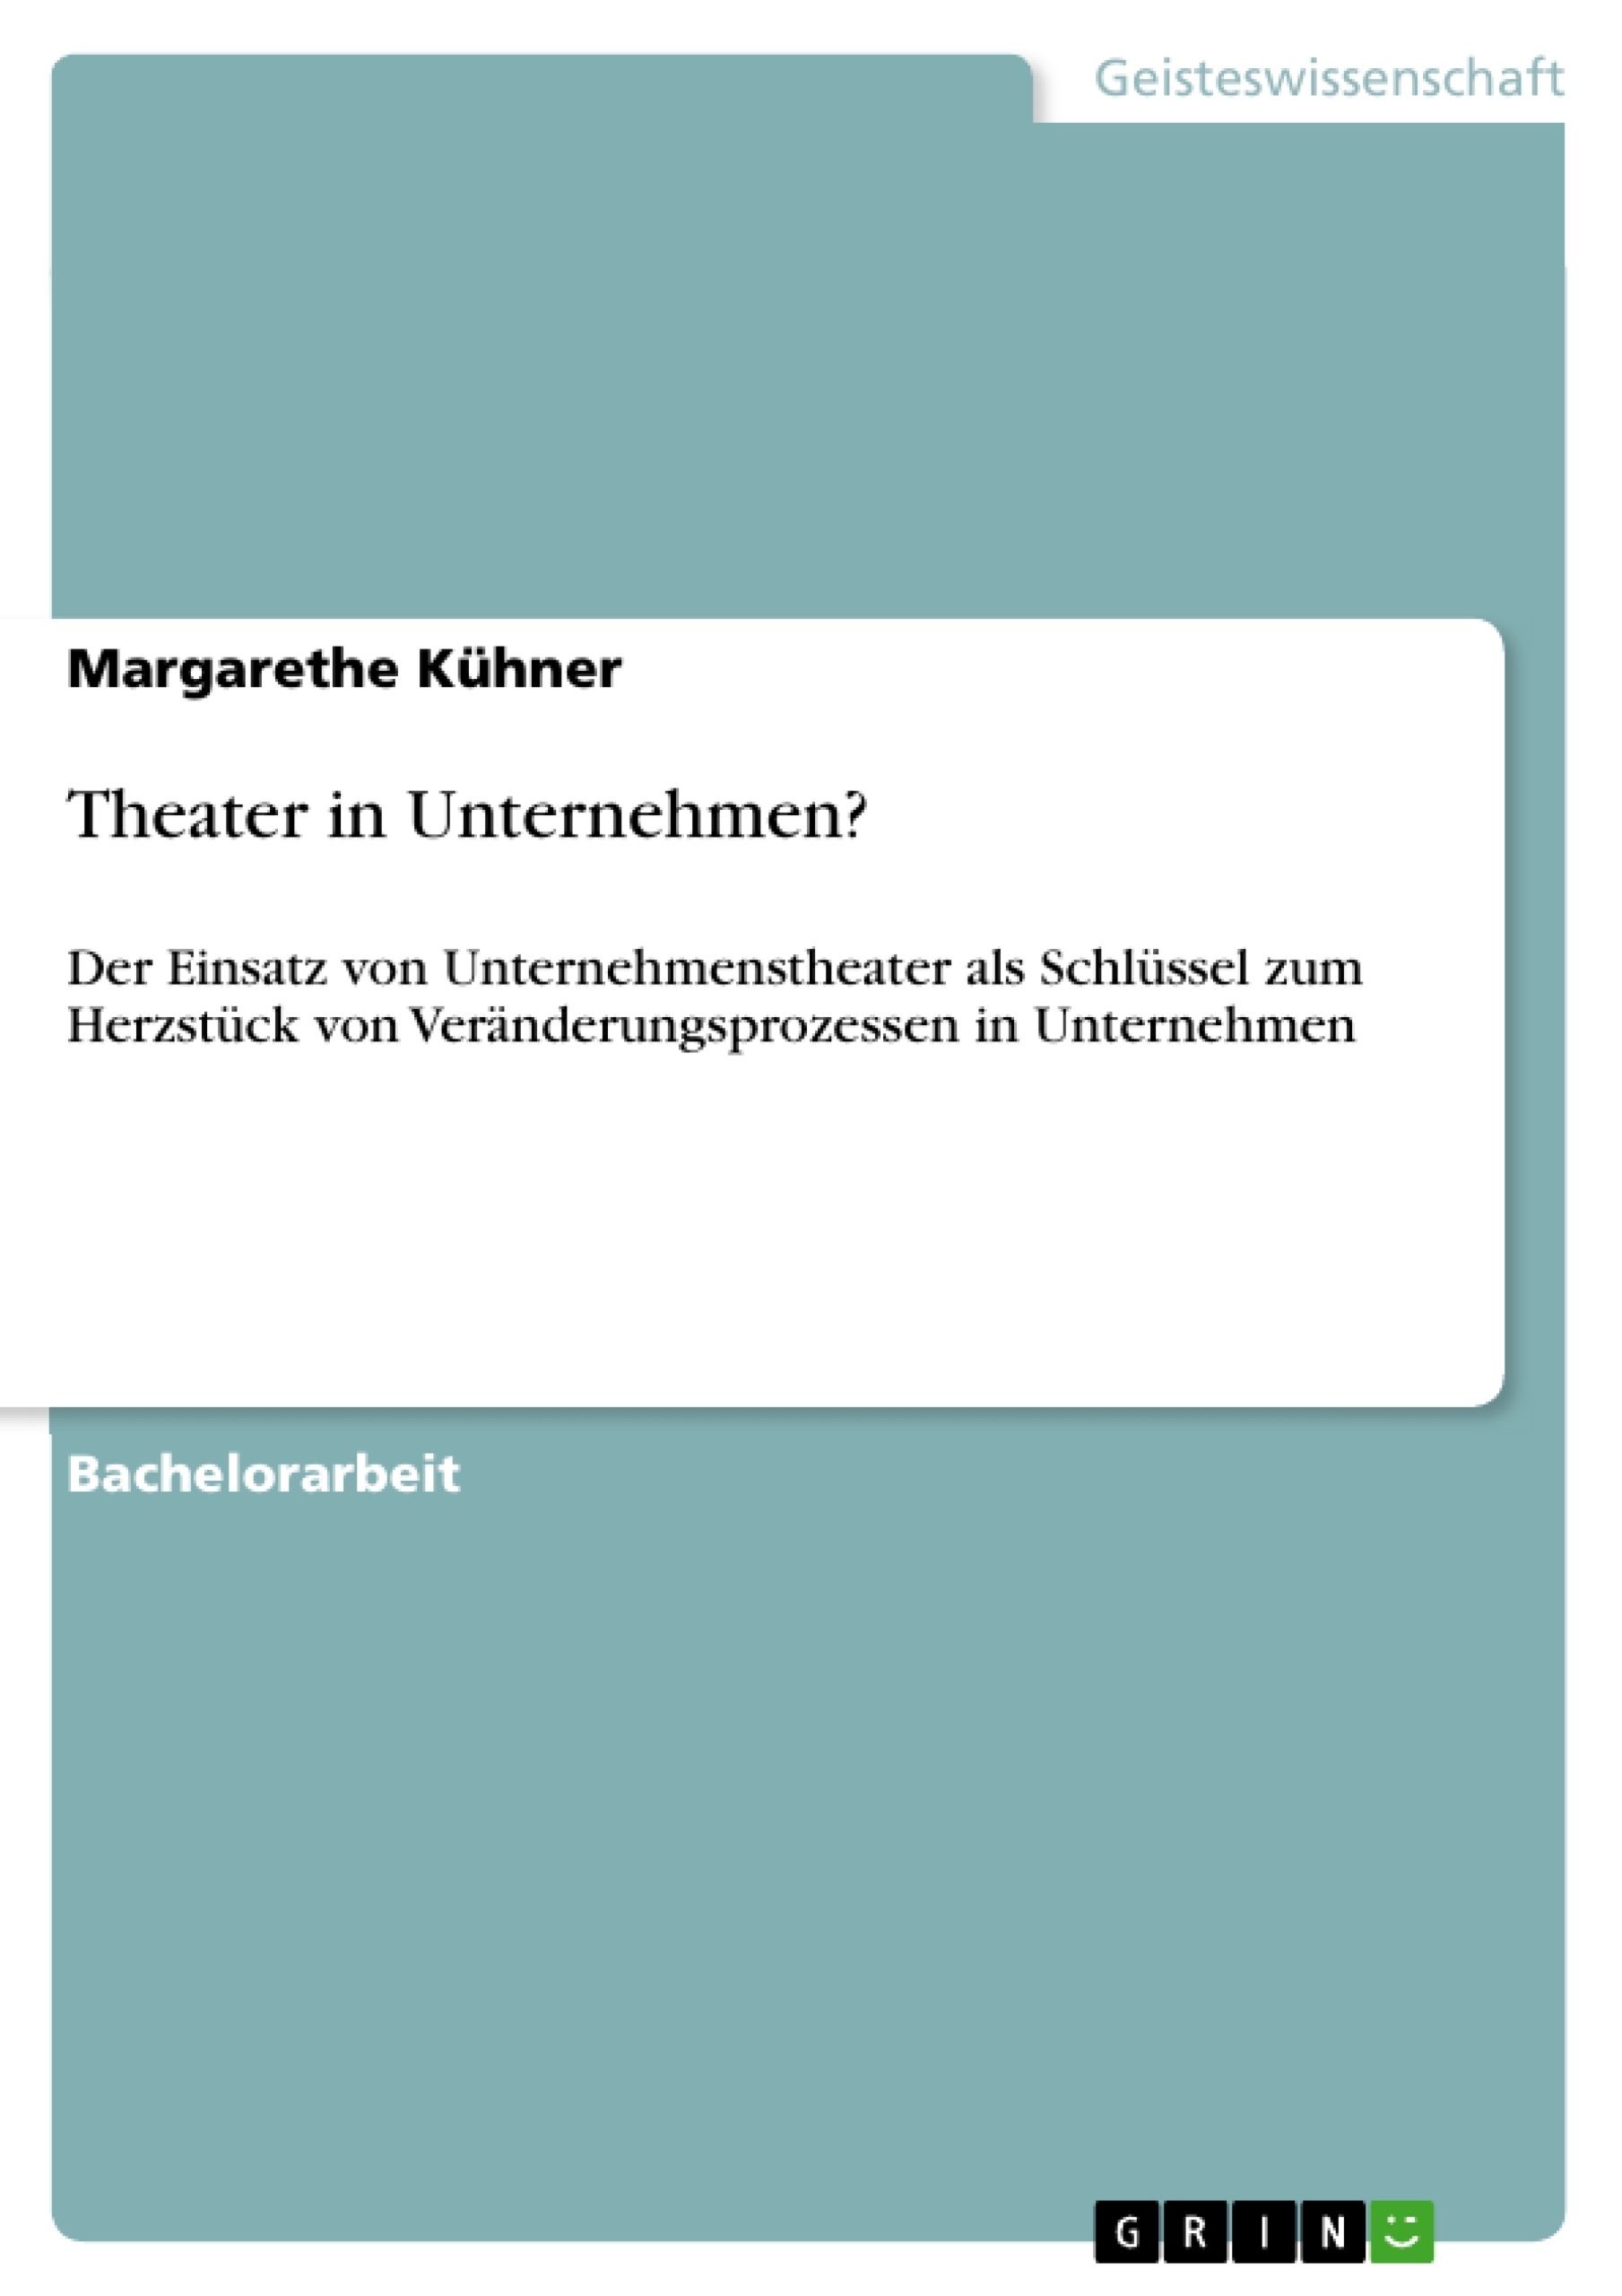 Title: Theater in Unternehmen?